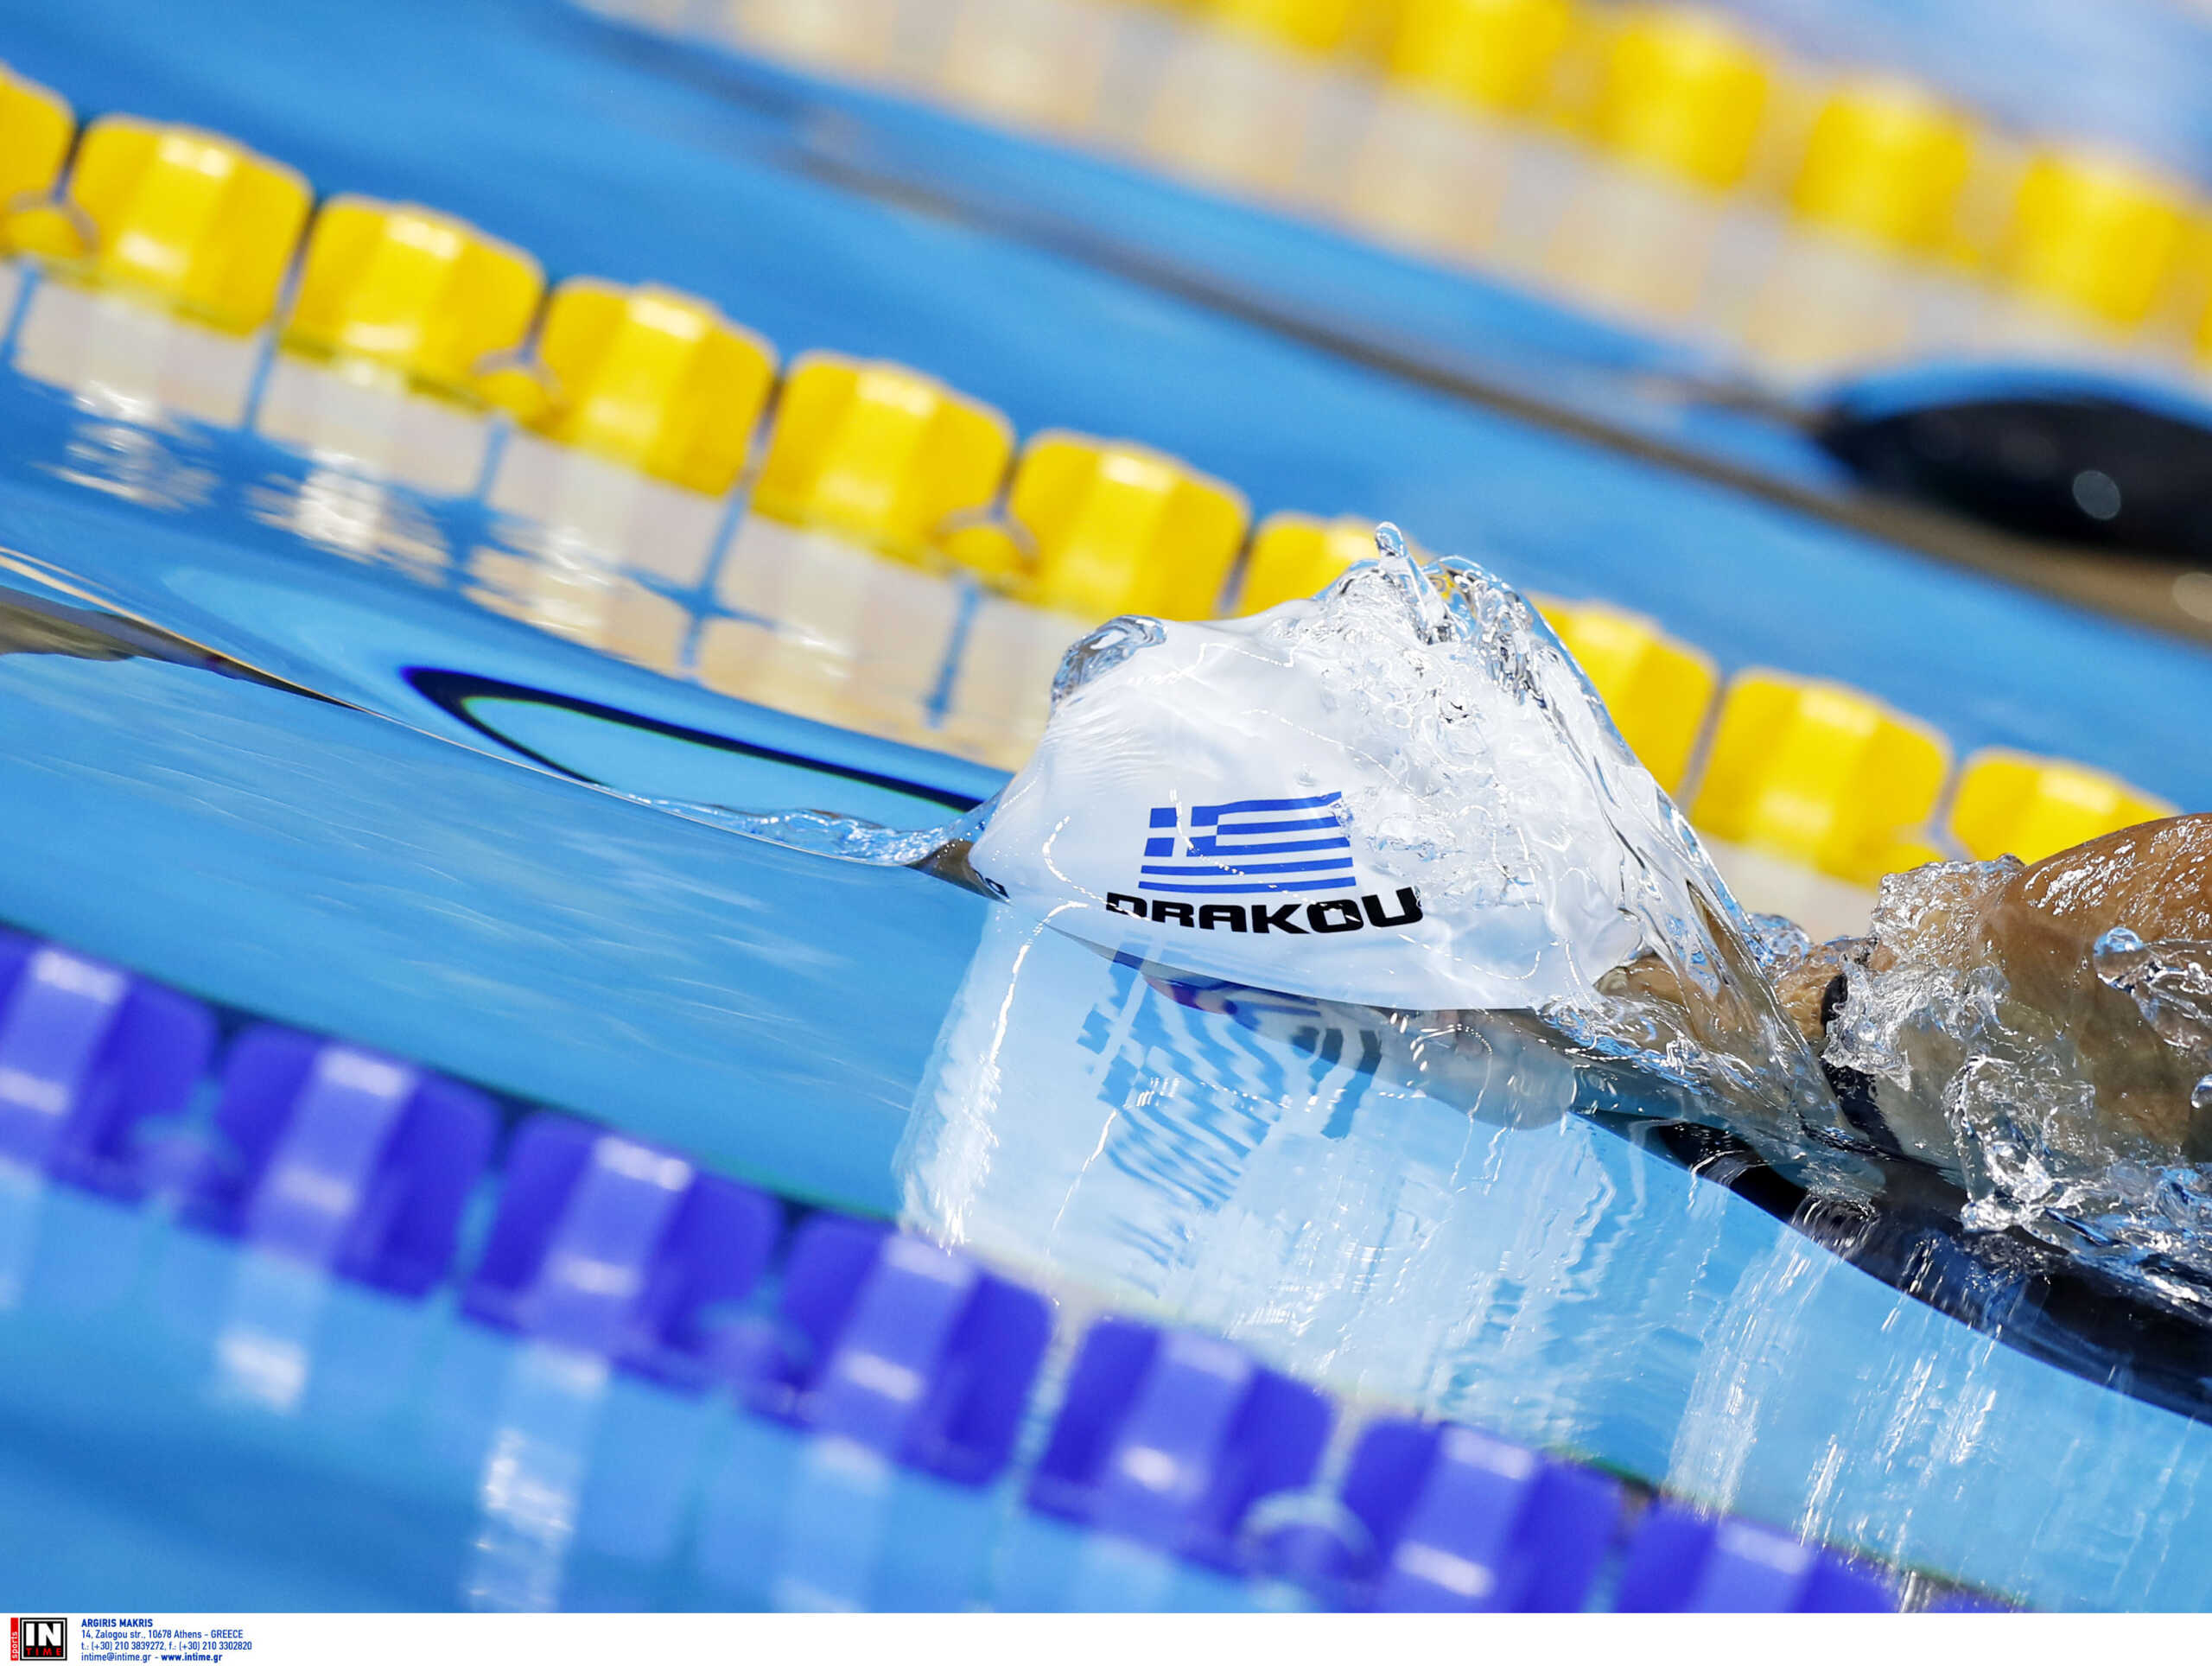 Η Νόρα Δράκου έκανε νέο πανελλήνιο ρεκόρ αλλά έμεινε 11η στο παγκόσμιο πρωτάθλημα κολύμβησης